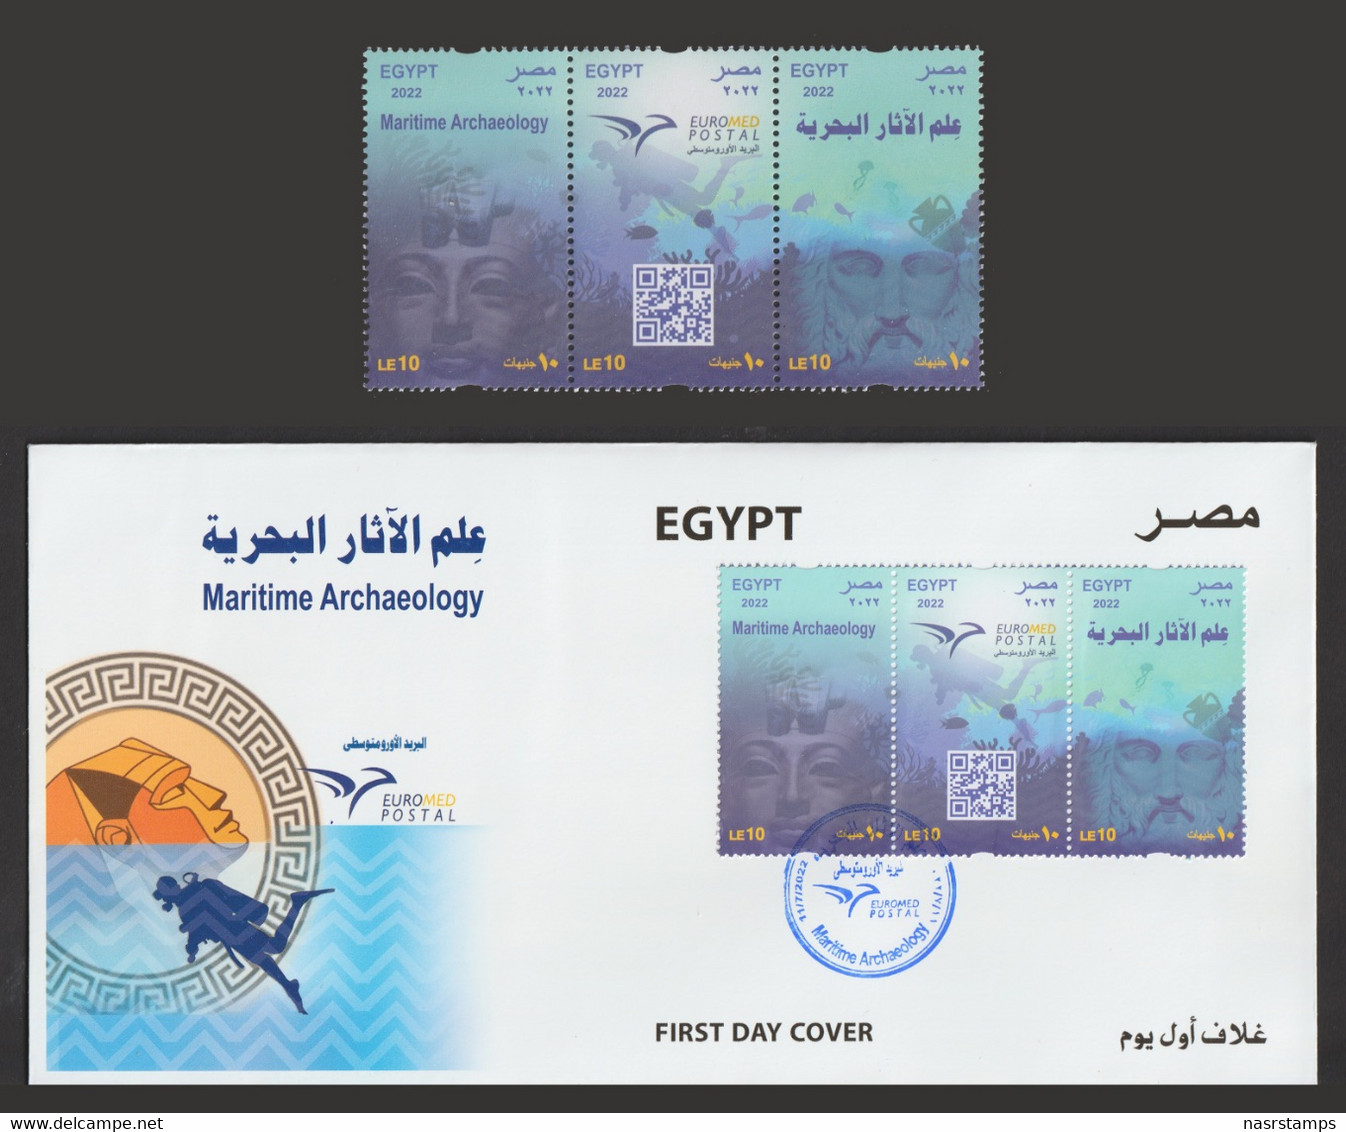 Egypt - 2022 - ( EUROMED Postal - Maritime Archaeology ) - MNH (**) - Gemeinschaftsausgaben